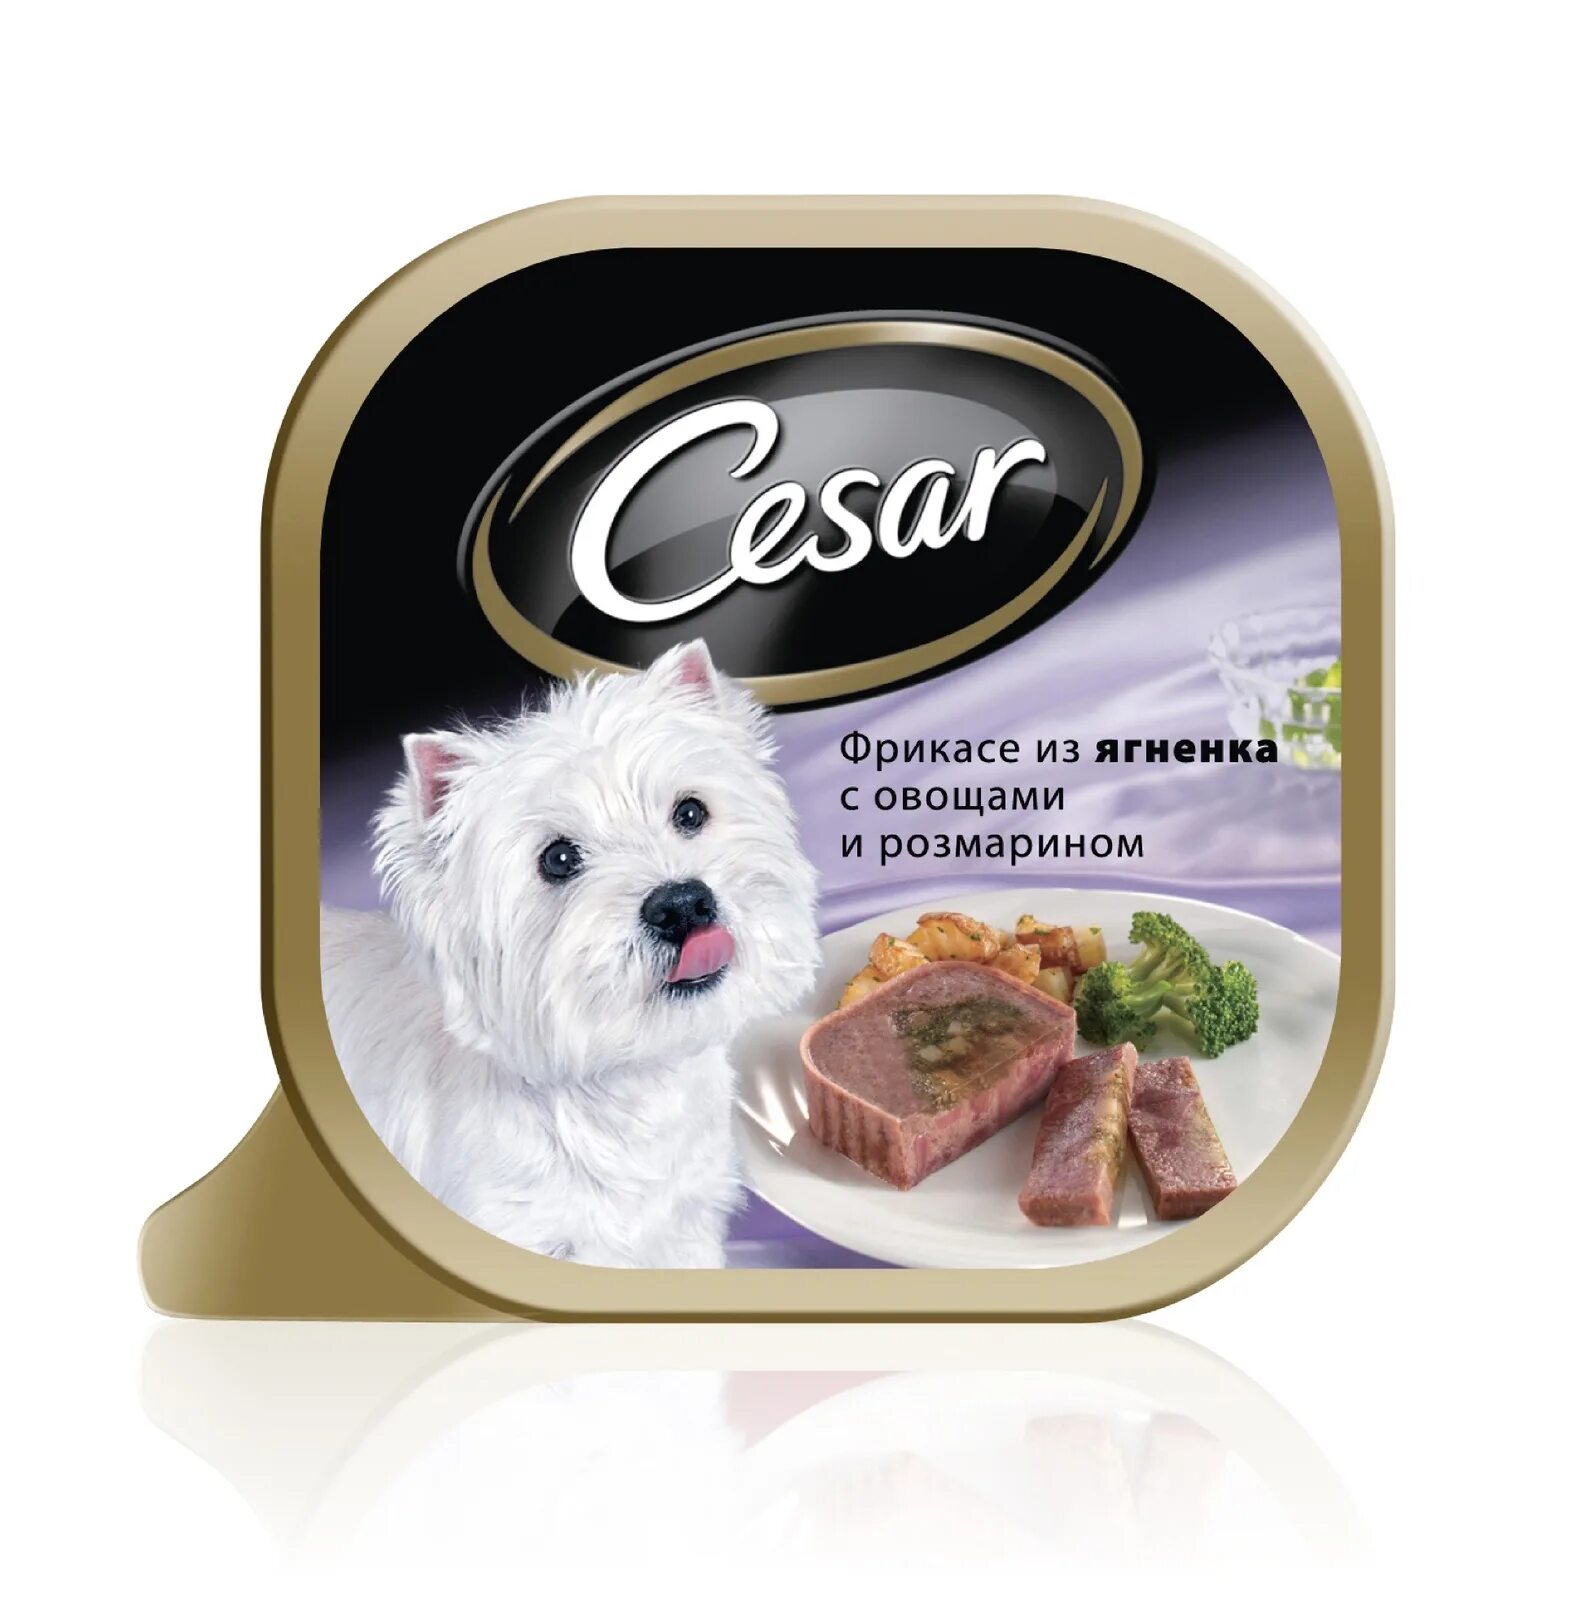 Недорогой корм для собак интернет магазин. Влажный корм для собак Cesar из говядины с овощами 100г. Cesar консервы для собак. Влажный корм для собак Cesar.